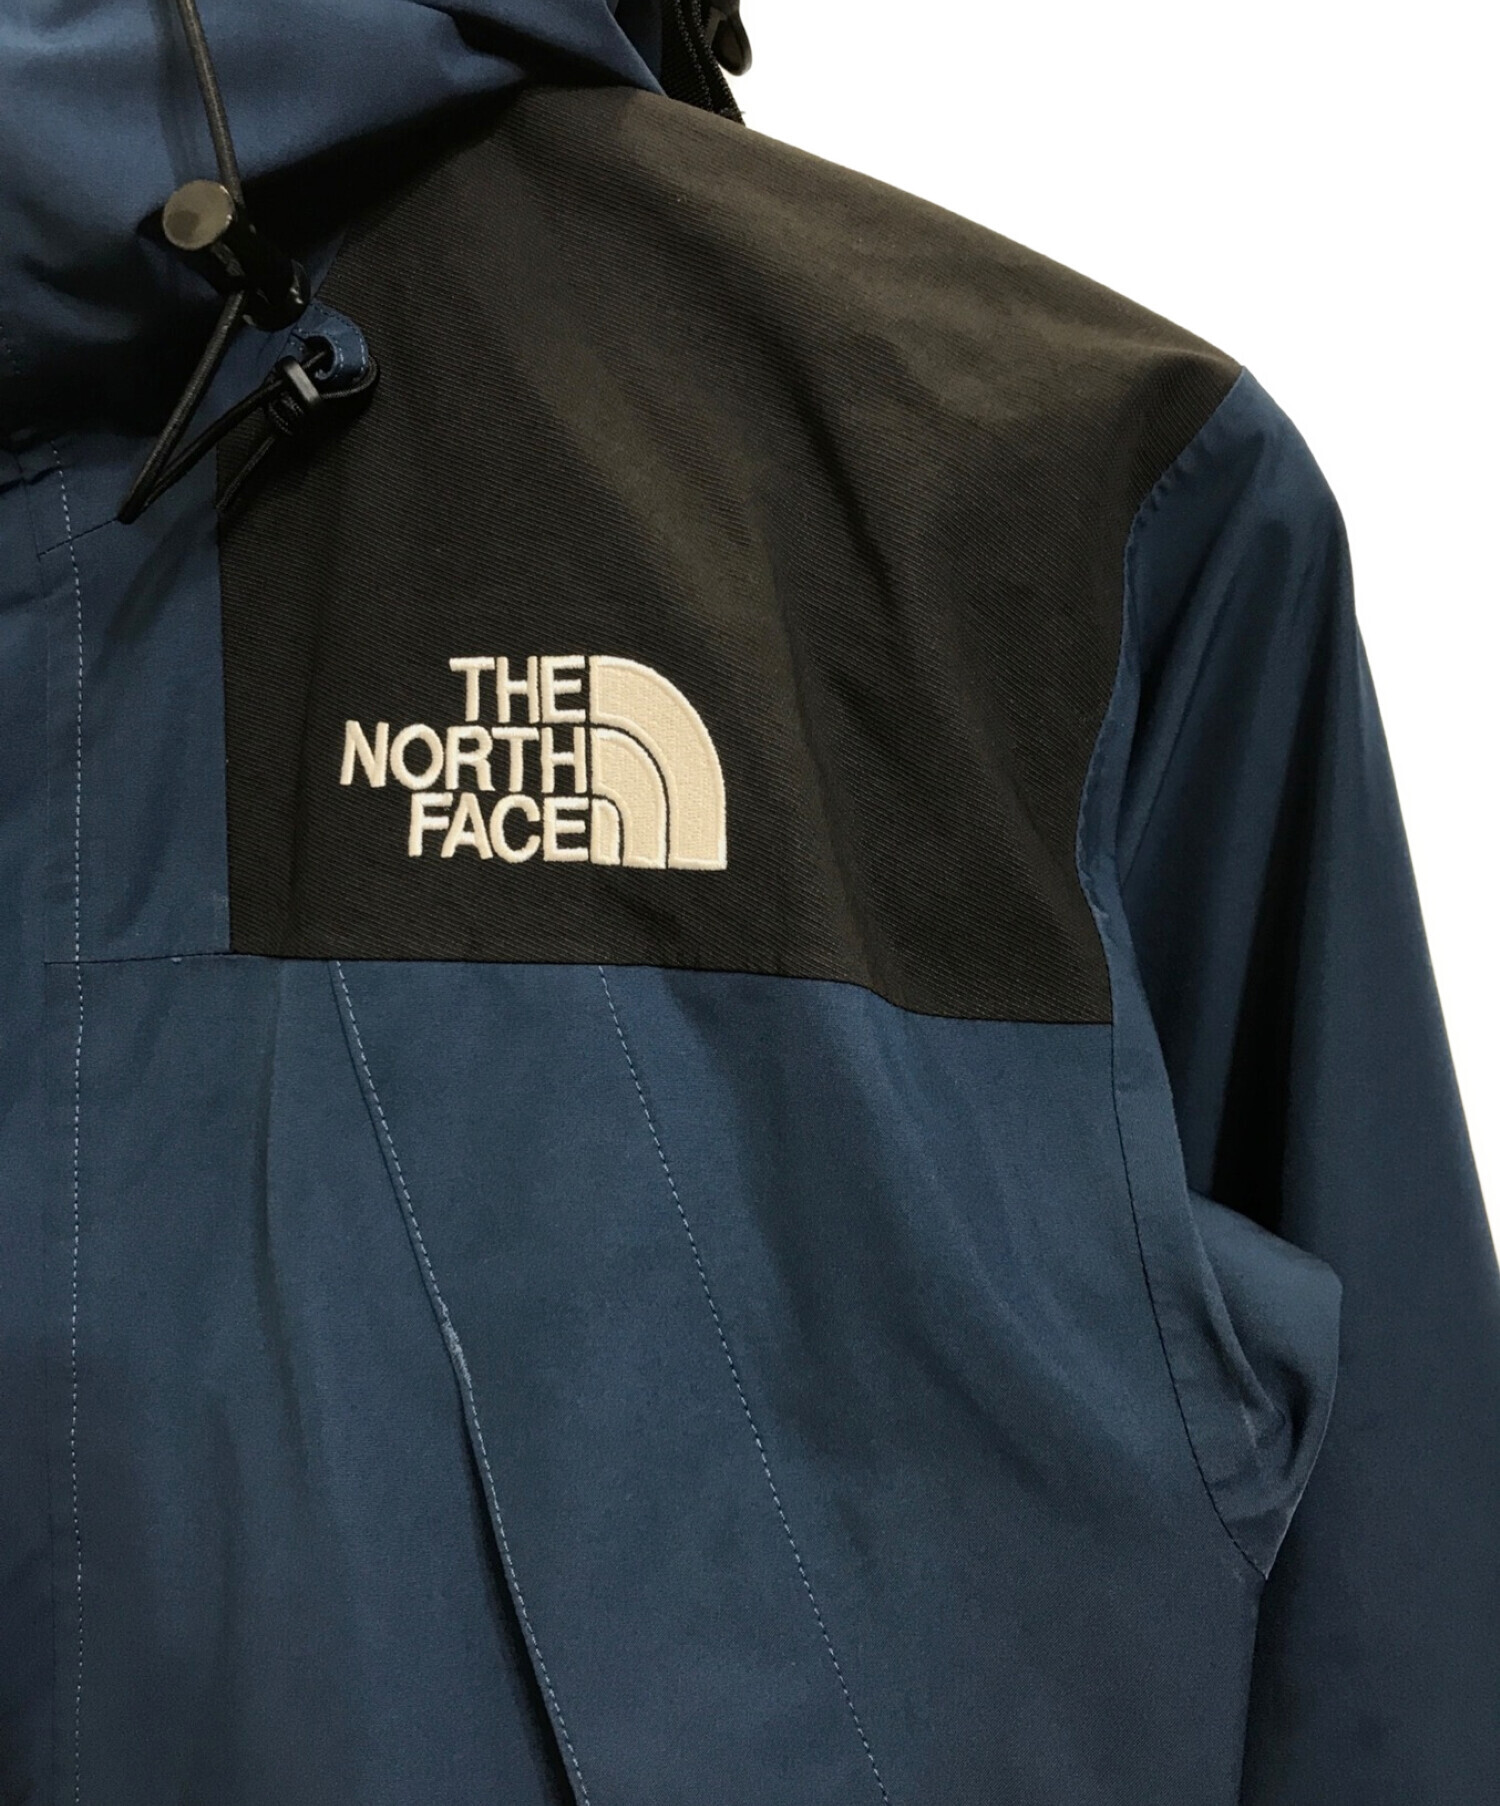 THE NORTH FACE (ザ ノース フェイス) 1990 MOUNTAIN JACKET ブルー サイズ:S